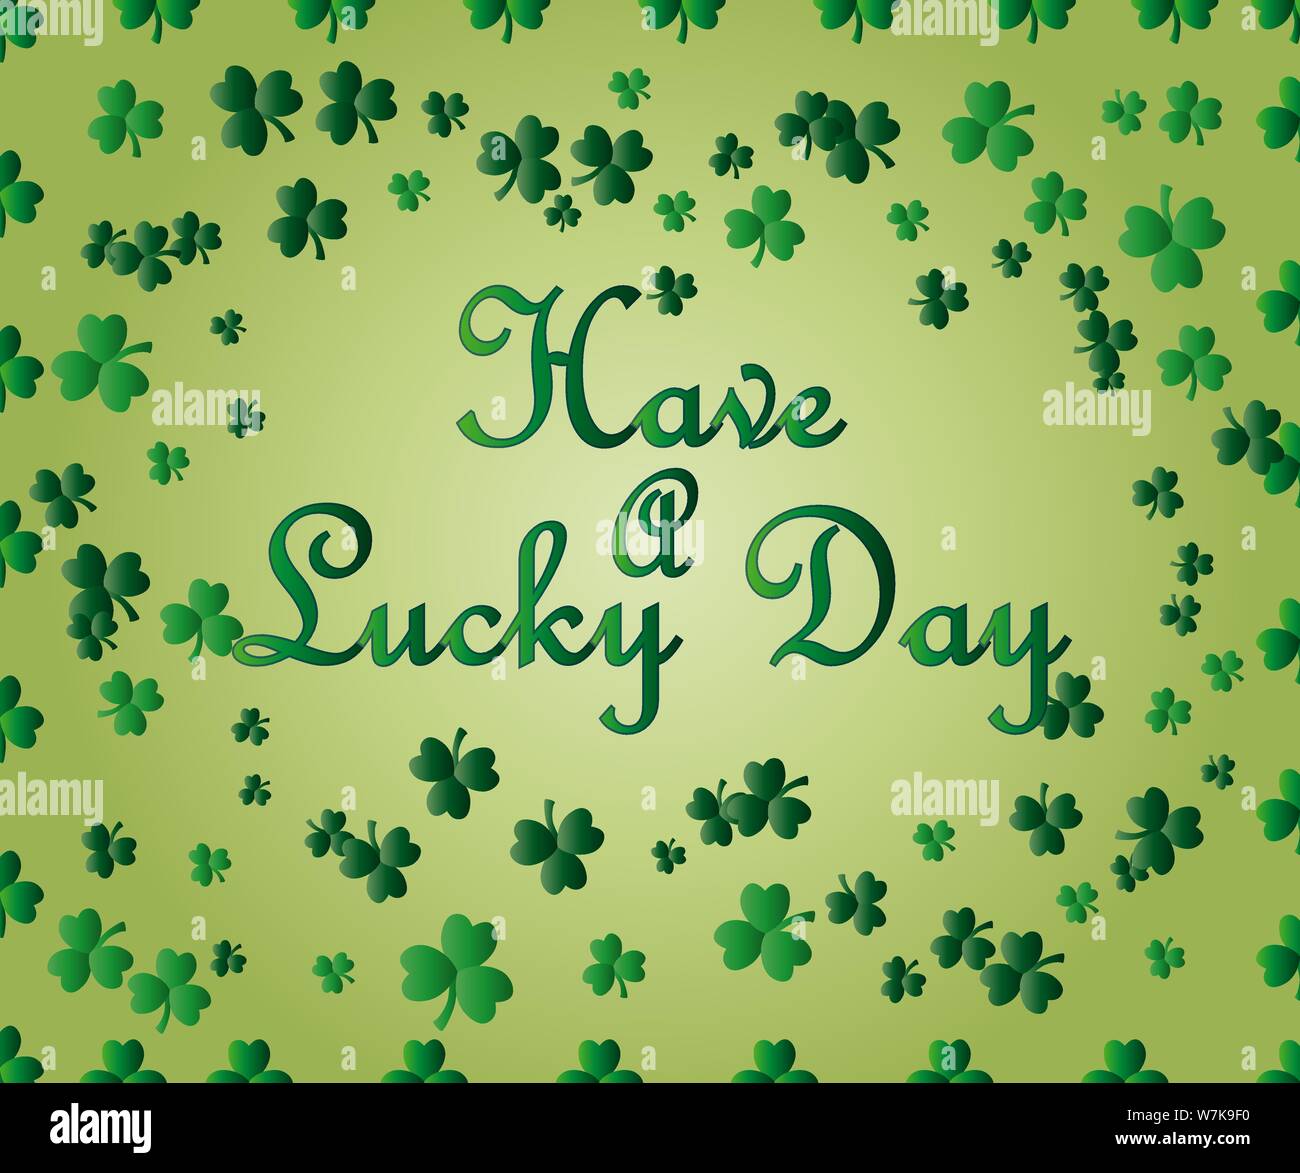 Saint Patrick's Day Greeting card avec les feuilles de trèfle vert étincelaient et texte. Inscription - Avoir un jour de chance Illustration de Vecteur